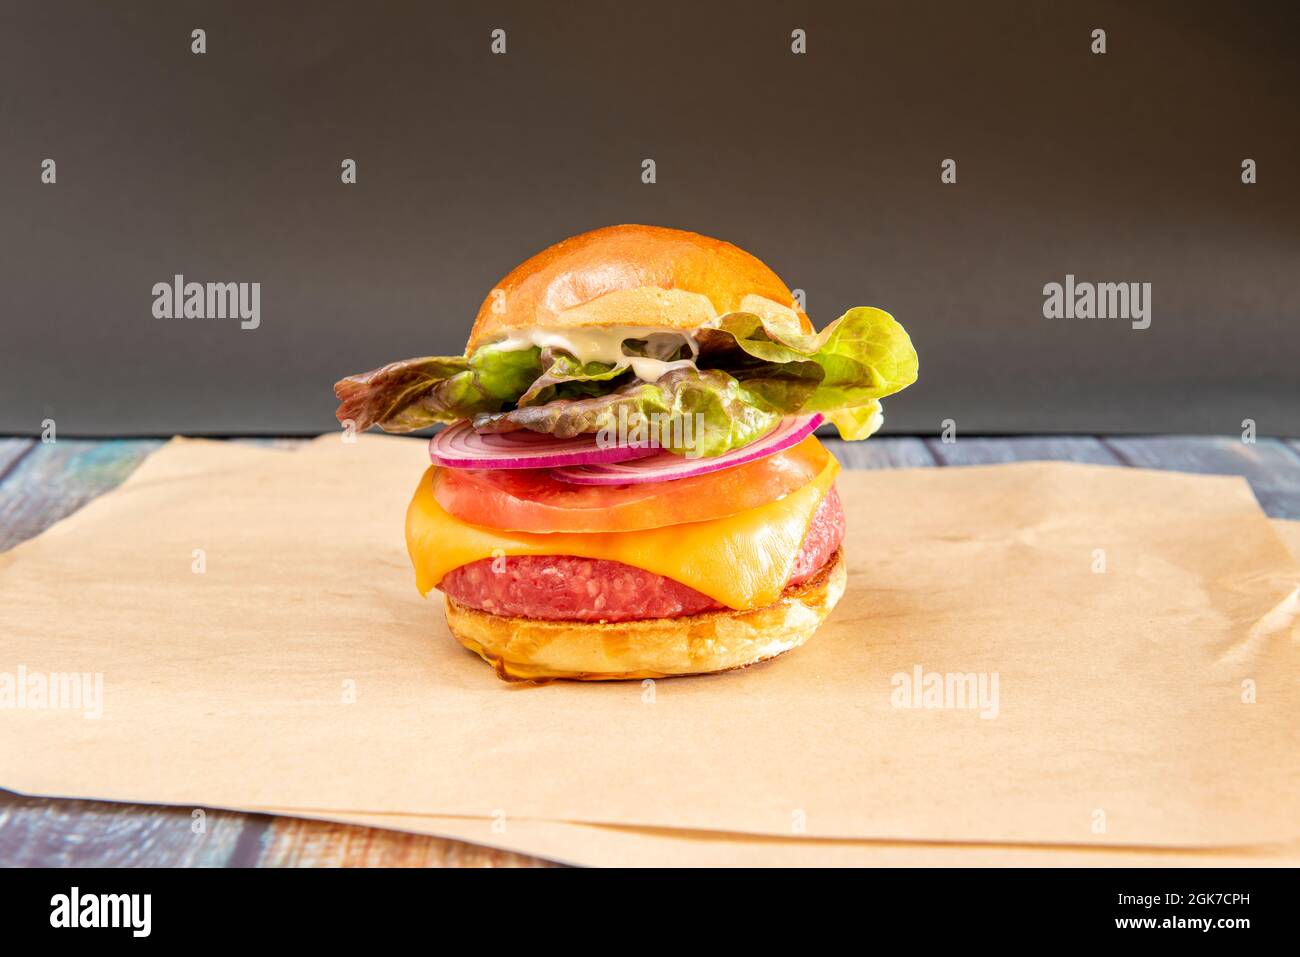 Hamburger di manzo vegano con formaggio cheddar, cipolla rossa cruda, lattuga e maionese su carta greaseproof Foto Stock